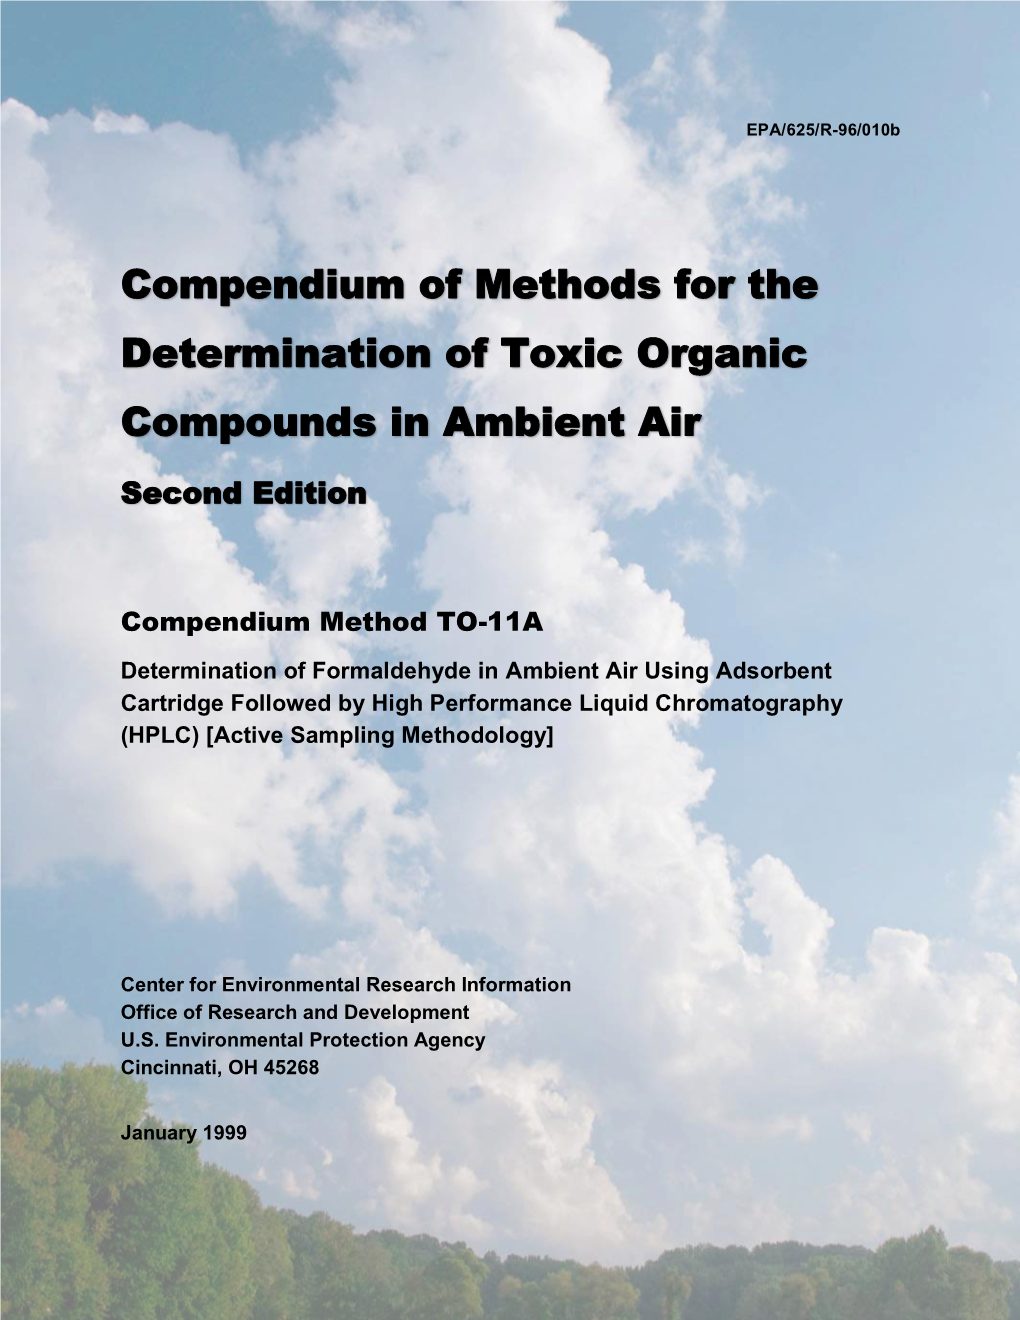 Compendium of Methods for the Determination of Toxic Organic